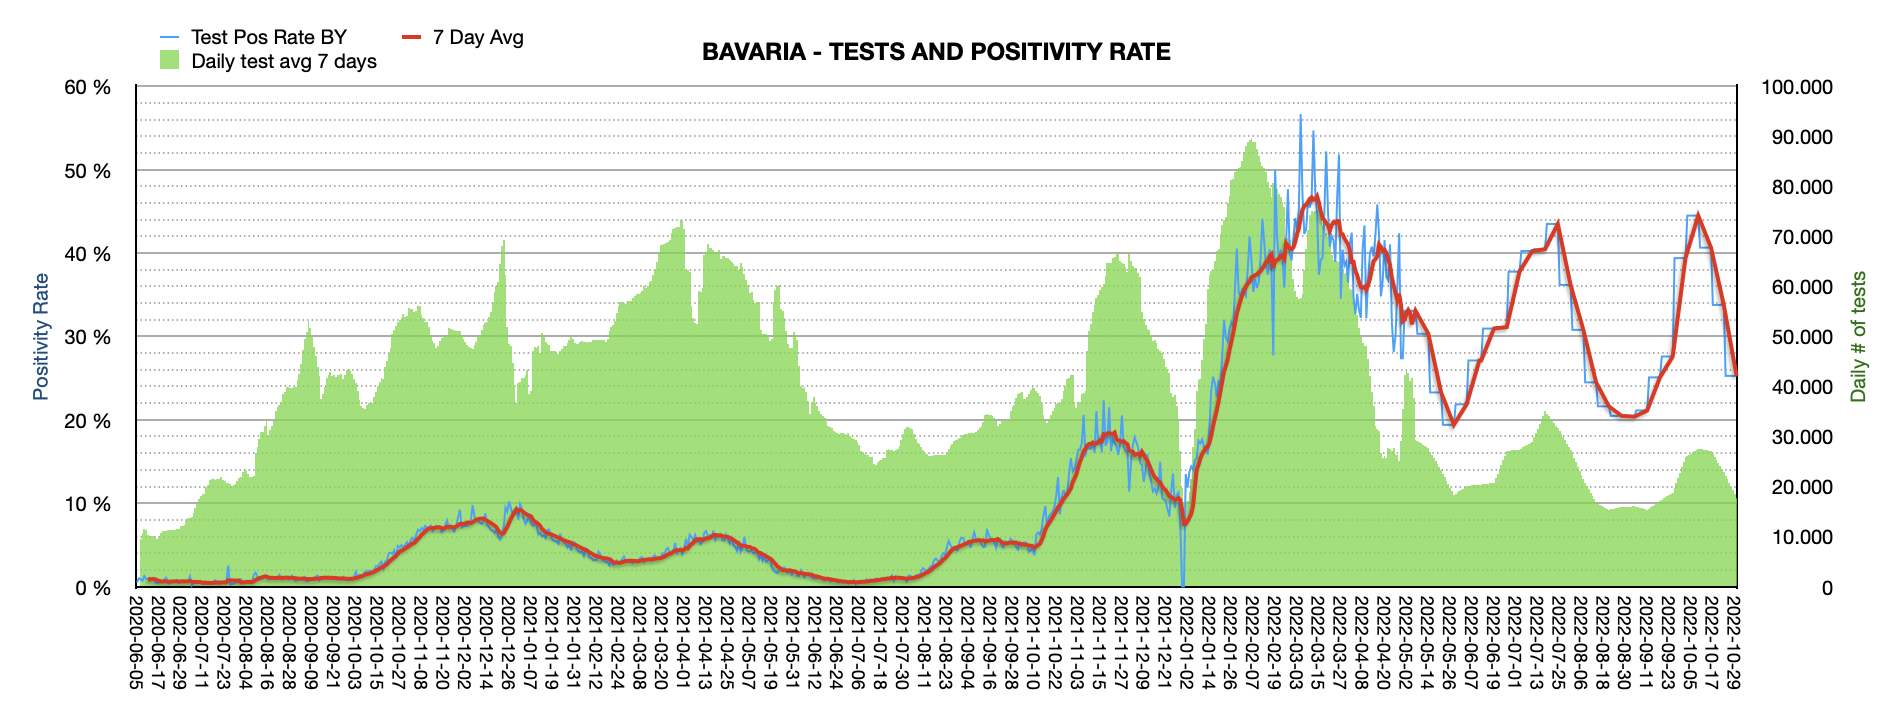 Grafik mit durchgeführten PCR Tests pro Tag in Bayern seit Juni 2020. Die Zahl der Tests pro Tag ist mit ca. 21.416 weiterhin niedrig und weit vom Maximum von ca. 100.000 Tests/Tag entfernt. Die Positivrate sinkt auf jetzt 32,42%.